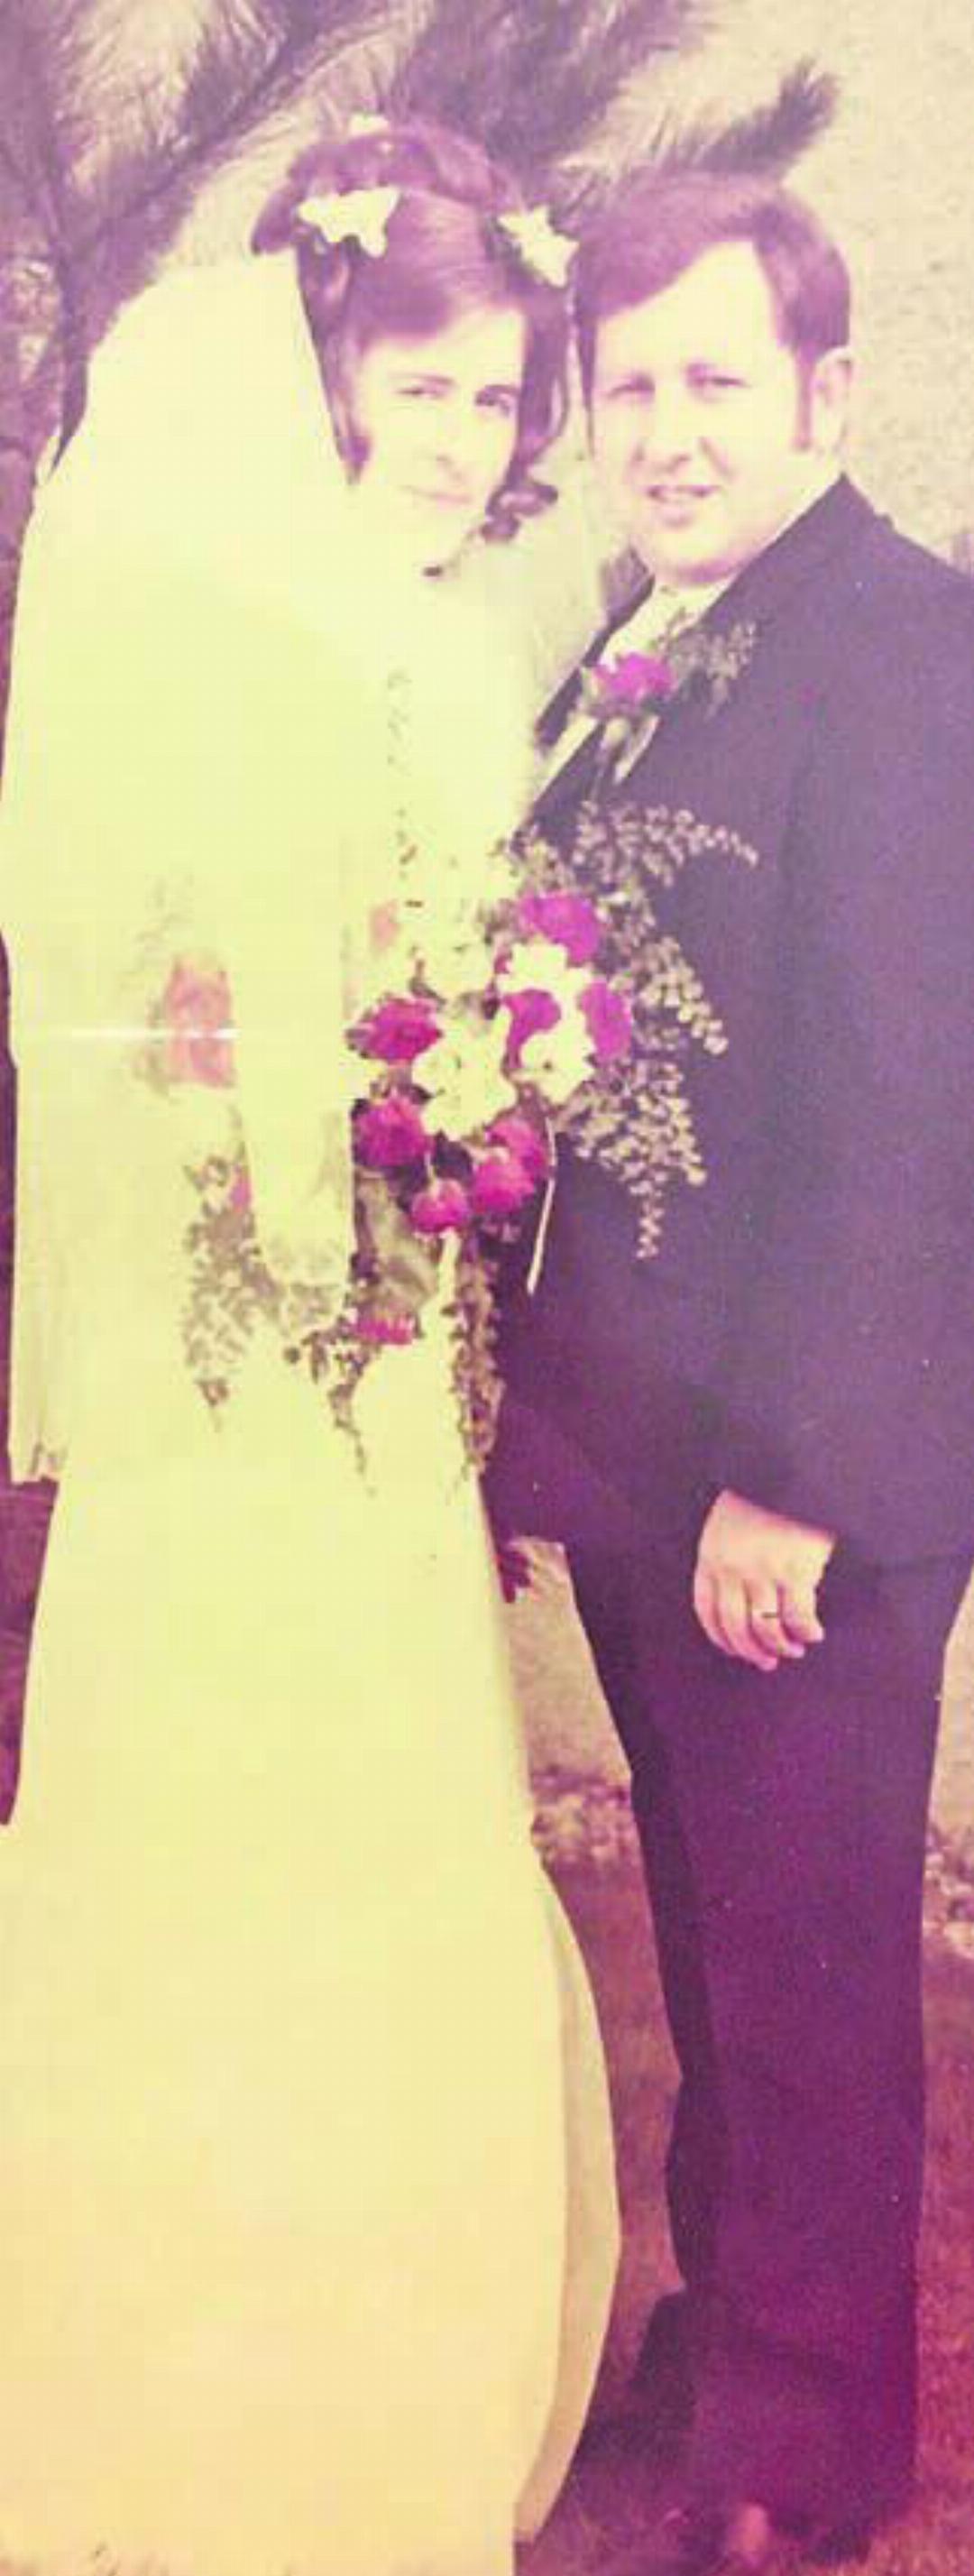 Ein Bild des grossen Tages: die Hochzeit am Ostermontag 1973.